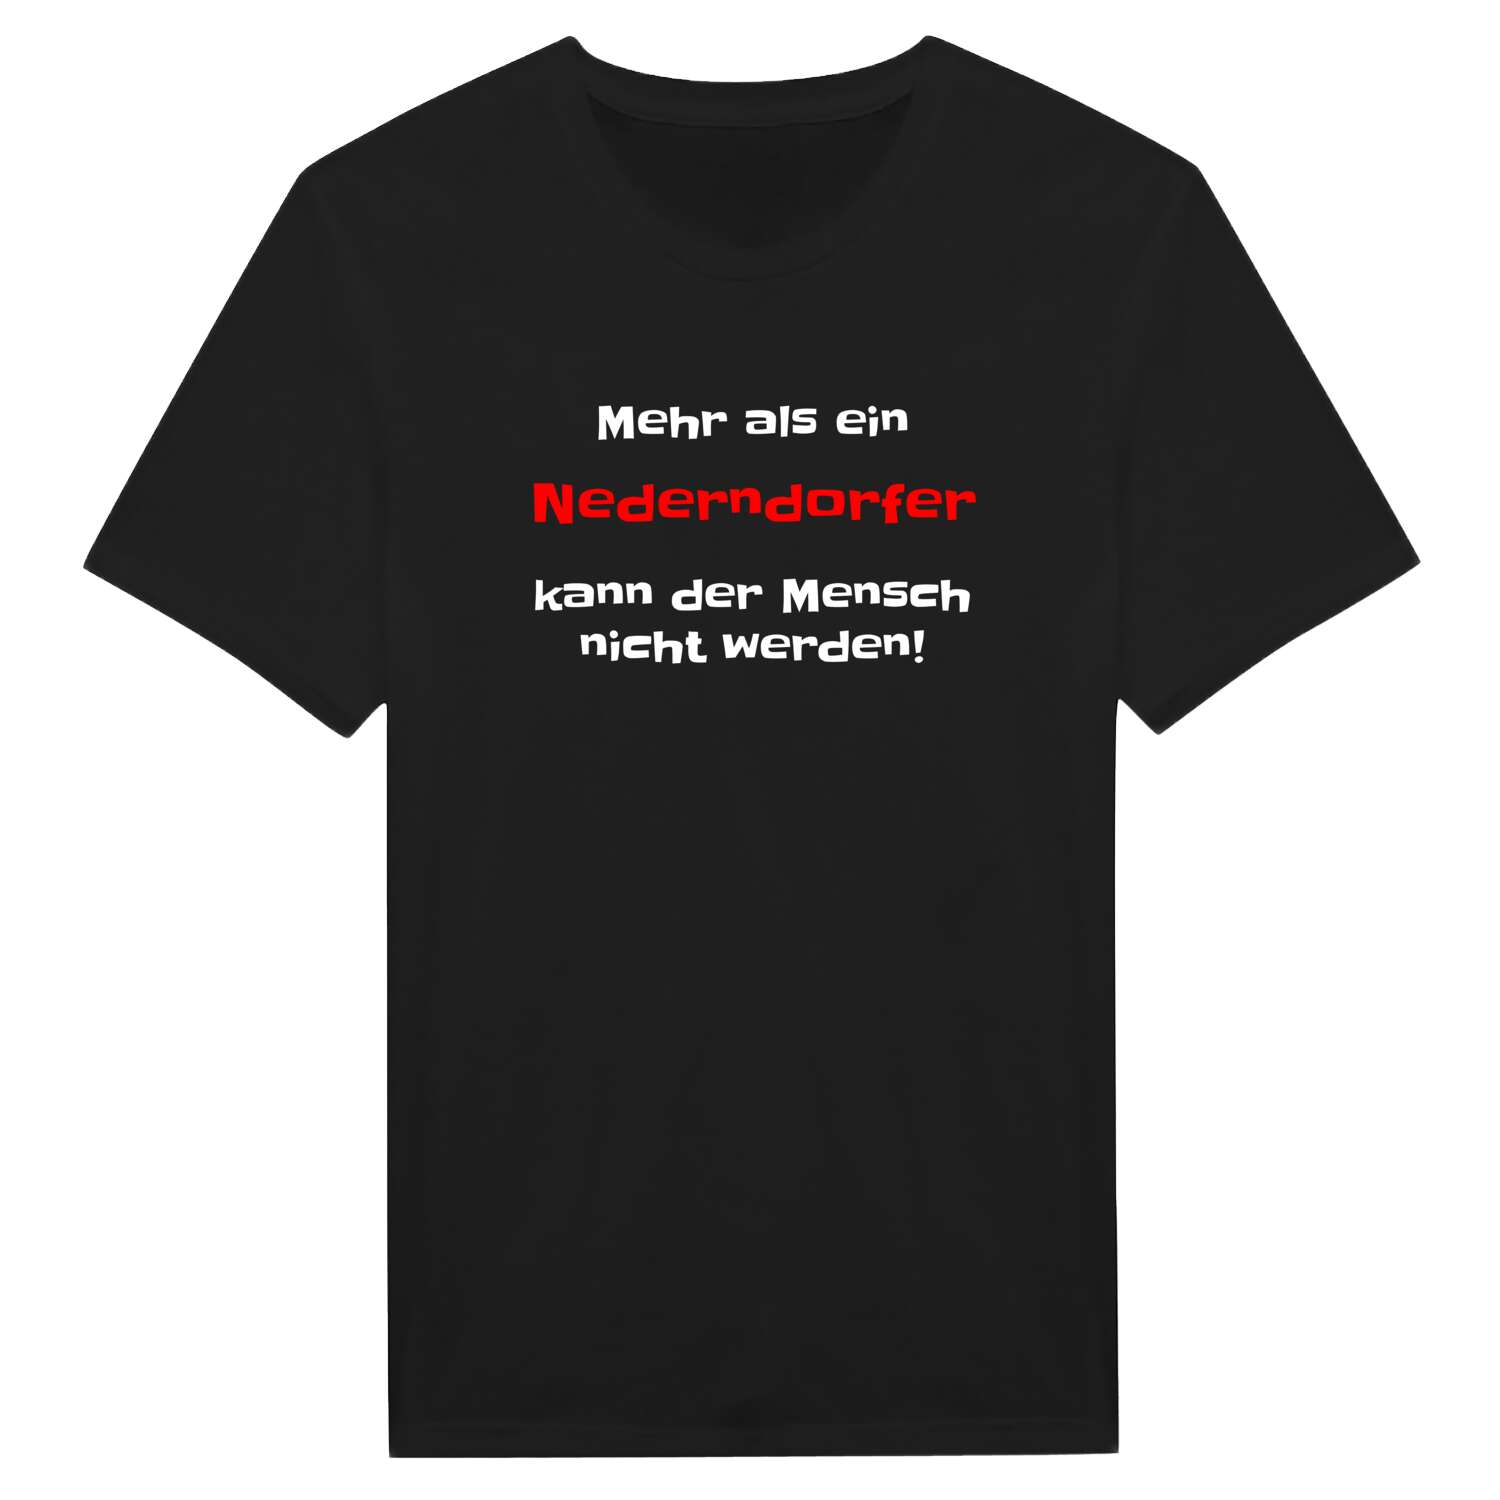 Nederndorf T-Shirt »Mehr als ein«